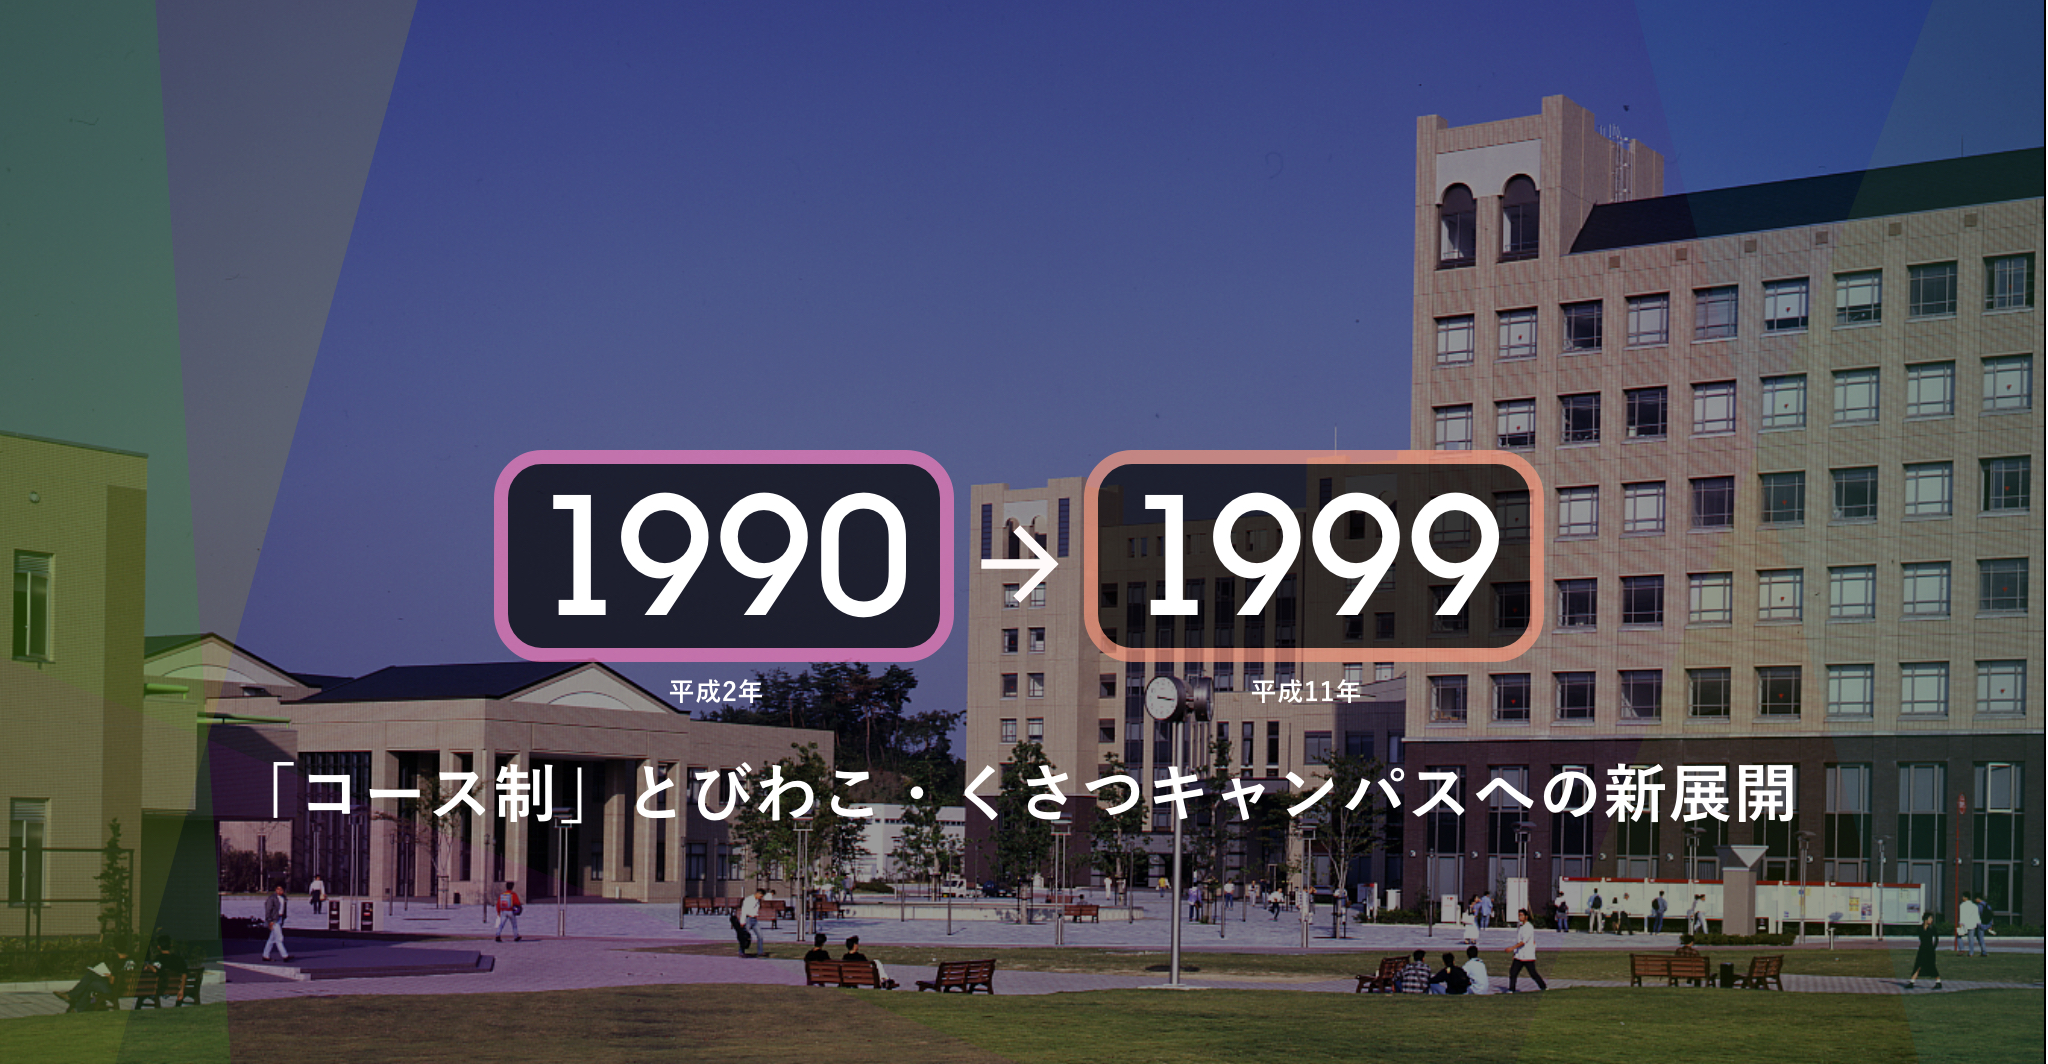 1990年（平成2年）-1999年（平成11年）「コース制」とびわこ・くさつキャンパスへの新展開